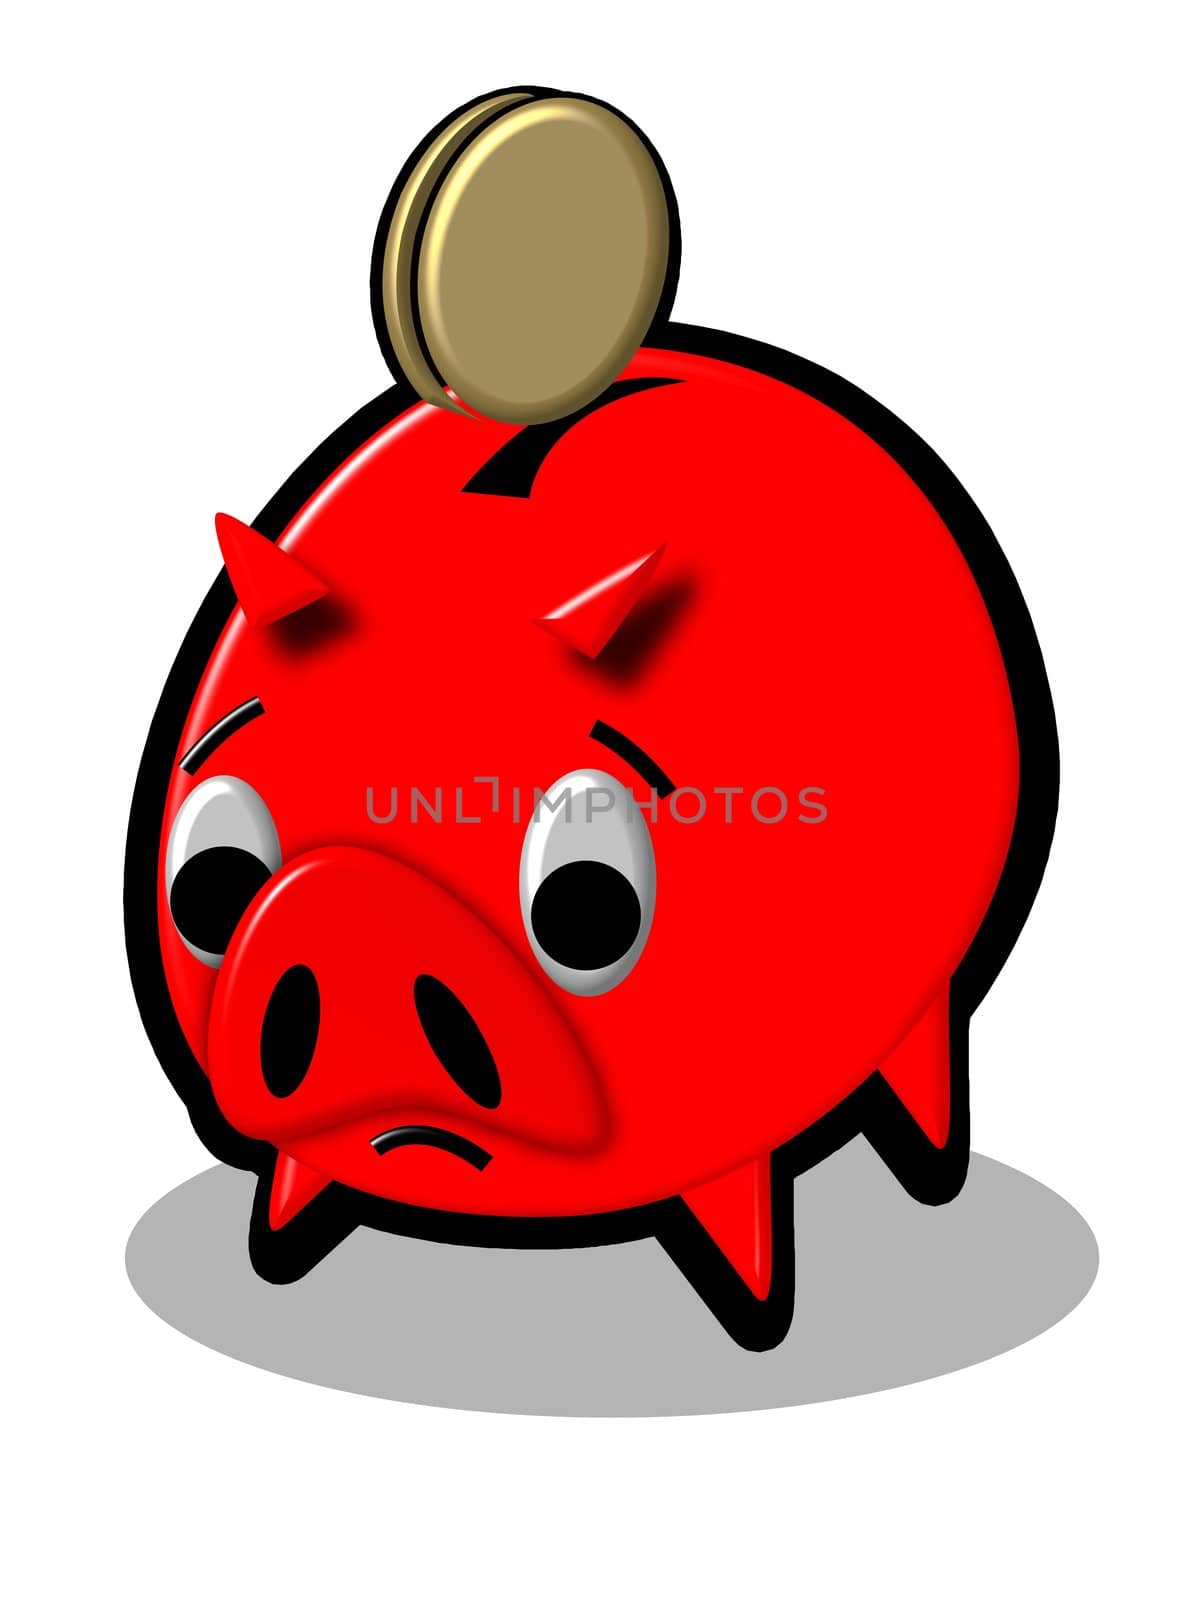 red piggy bank